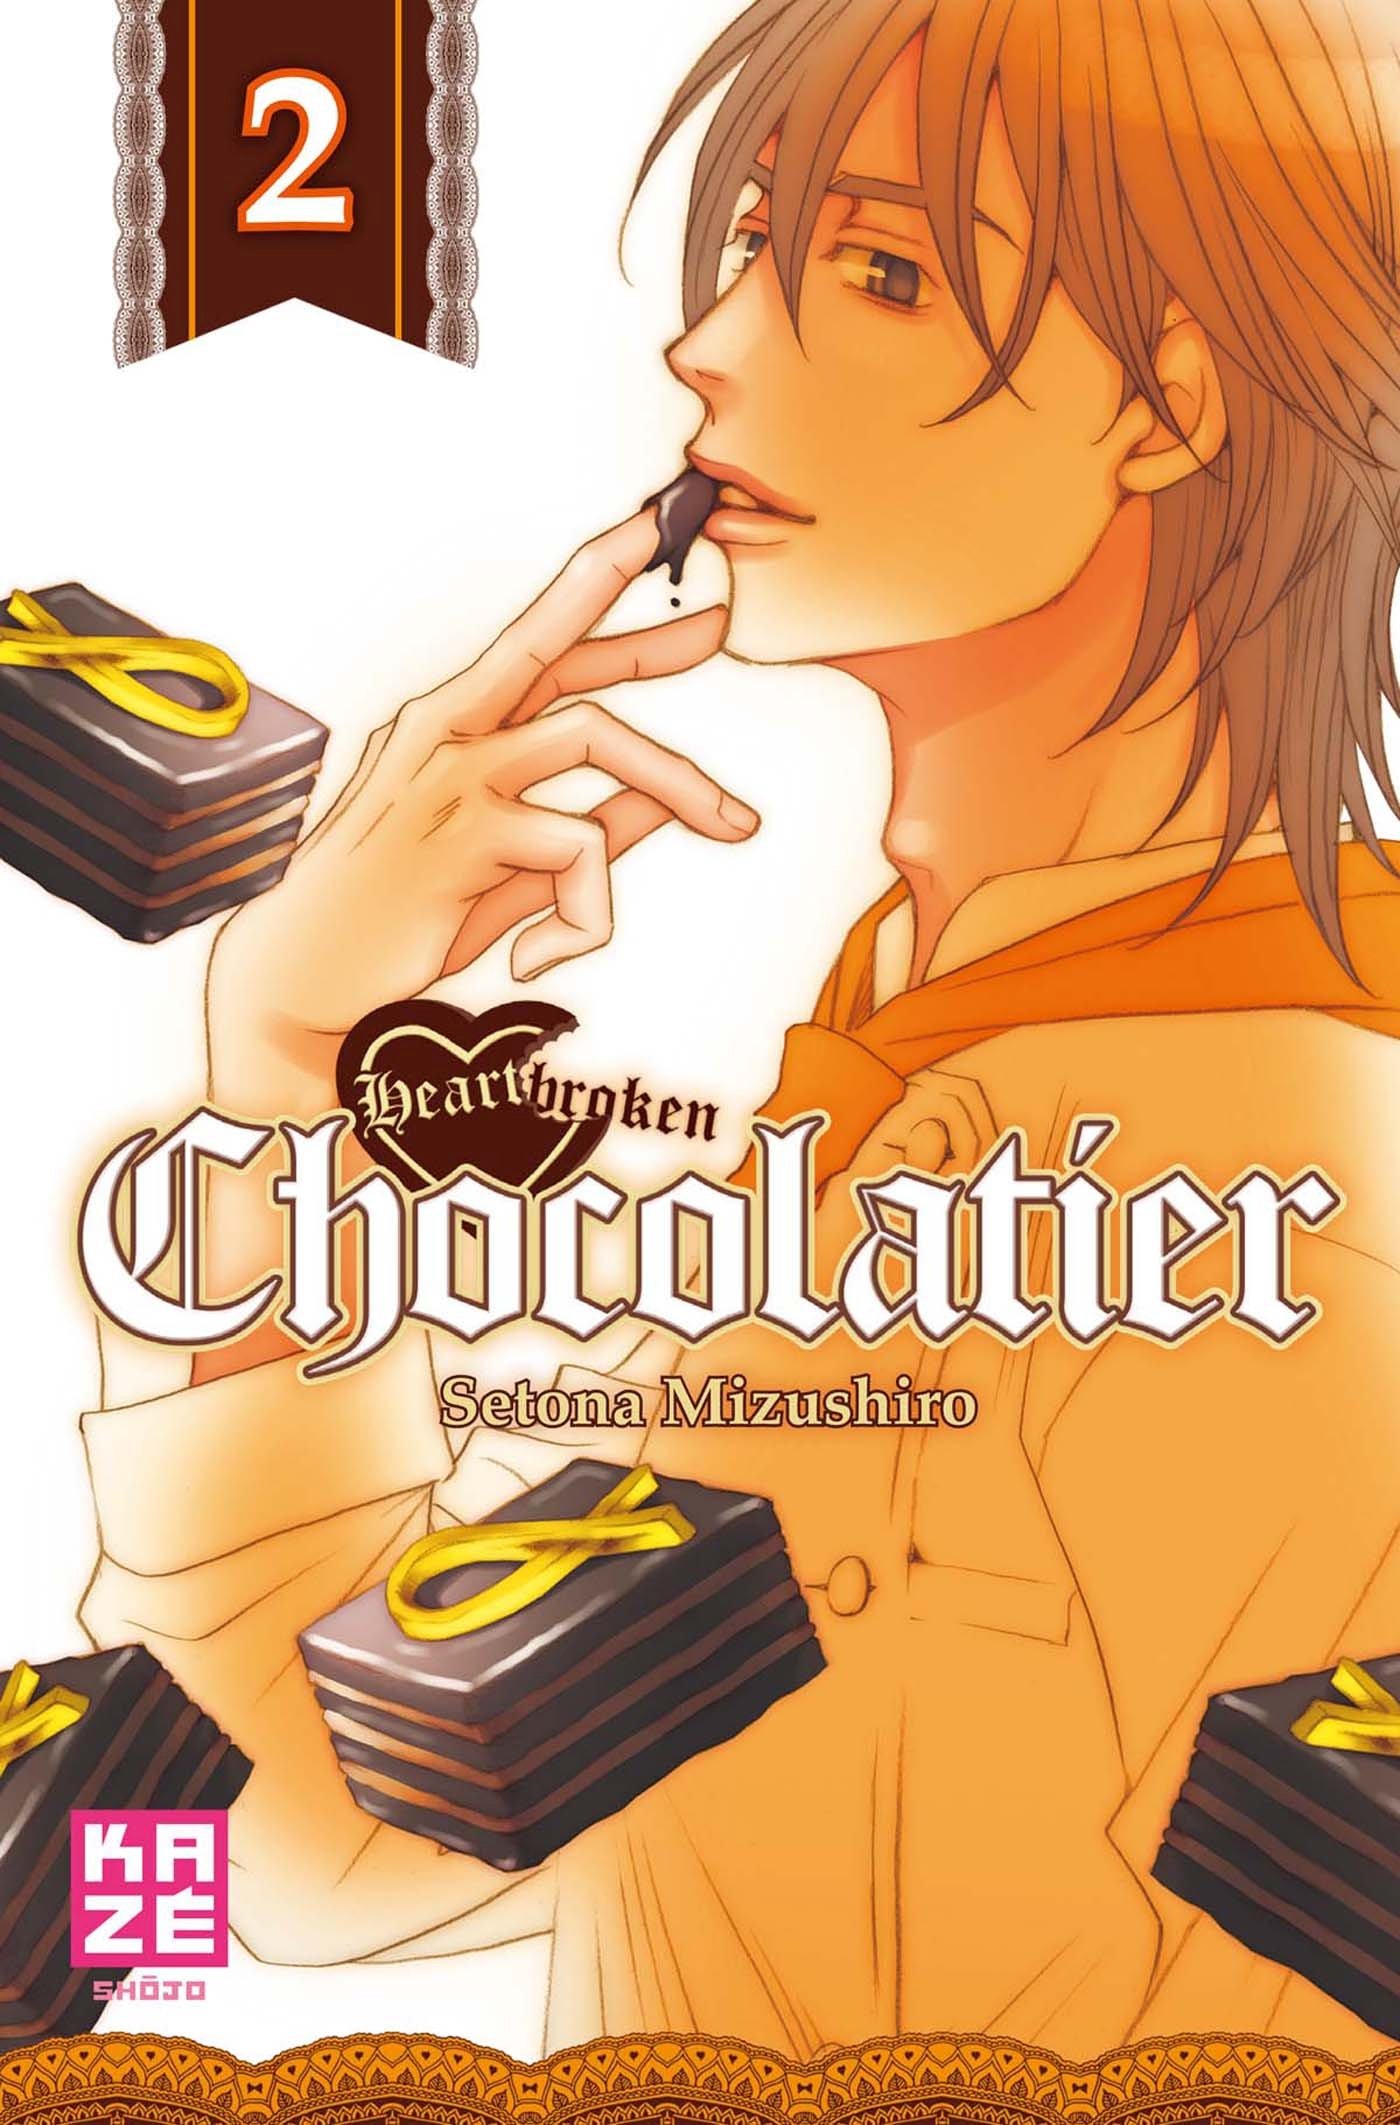 heartbrokenchocolatier2